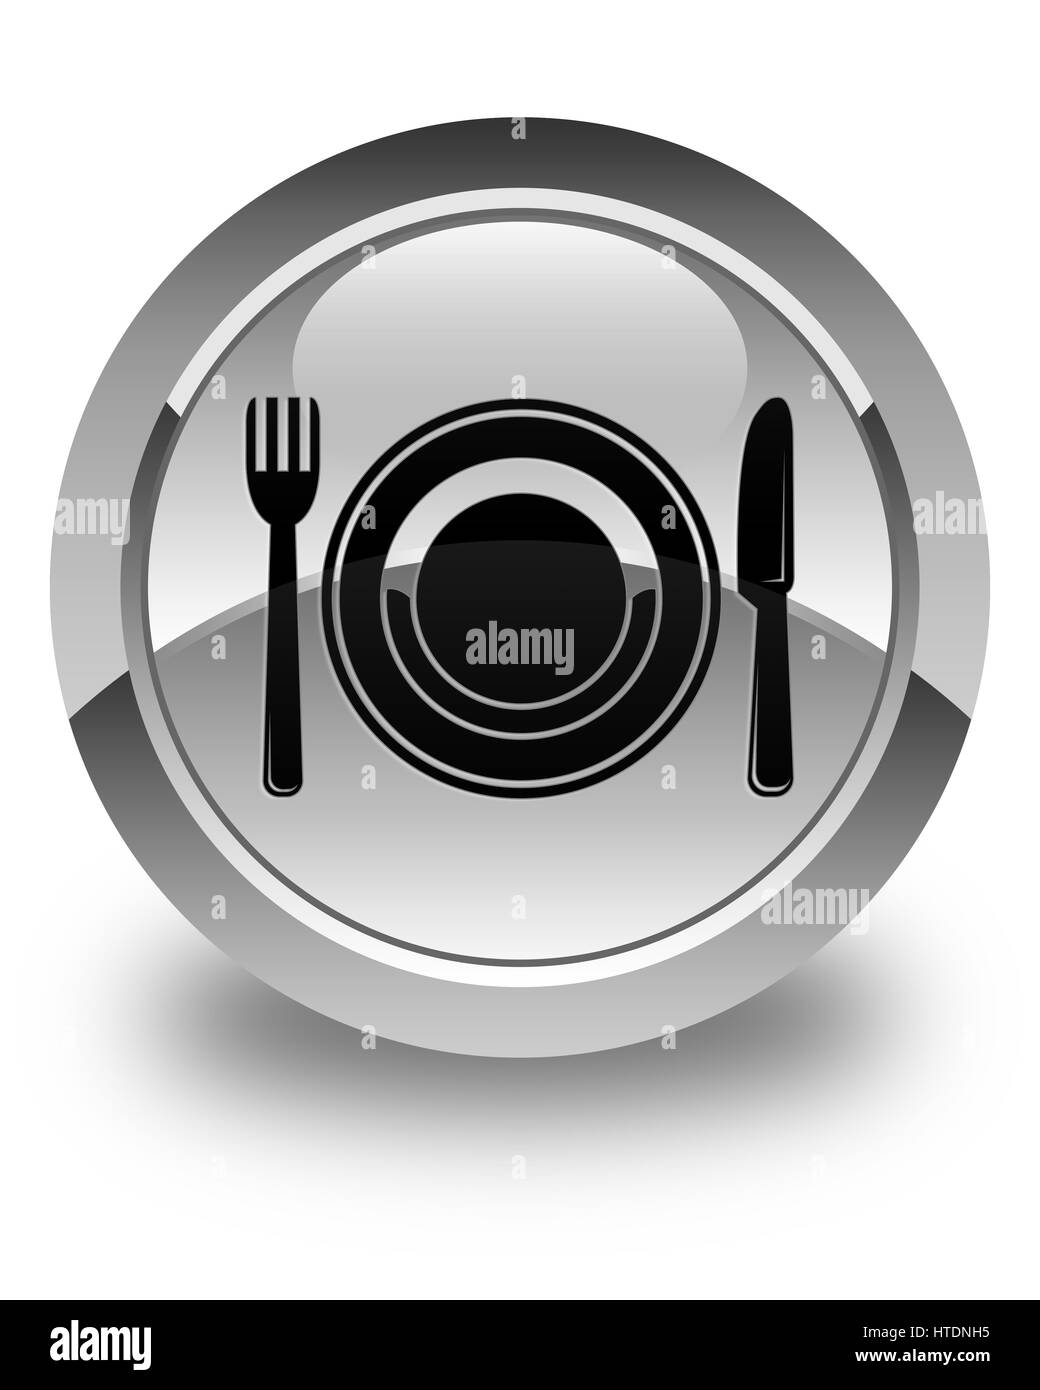 Essen Platte Symbol isoliert auf glänzend weiße Runde Taste abstrakte Abbildung Stockfoto